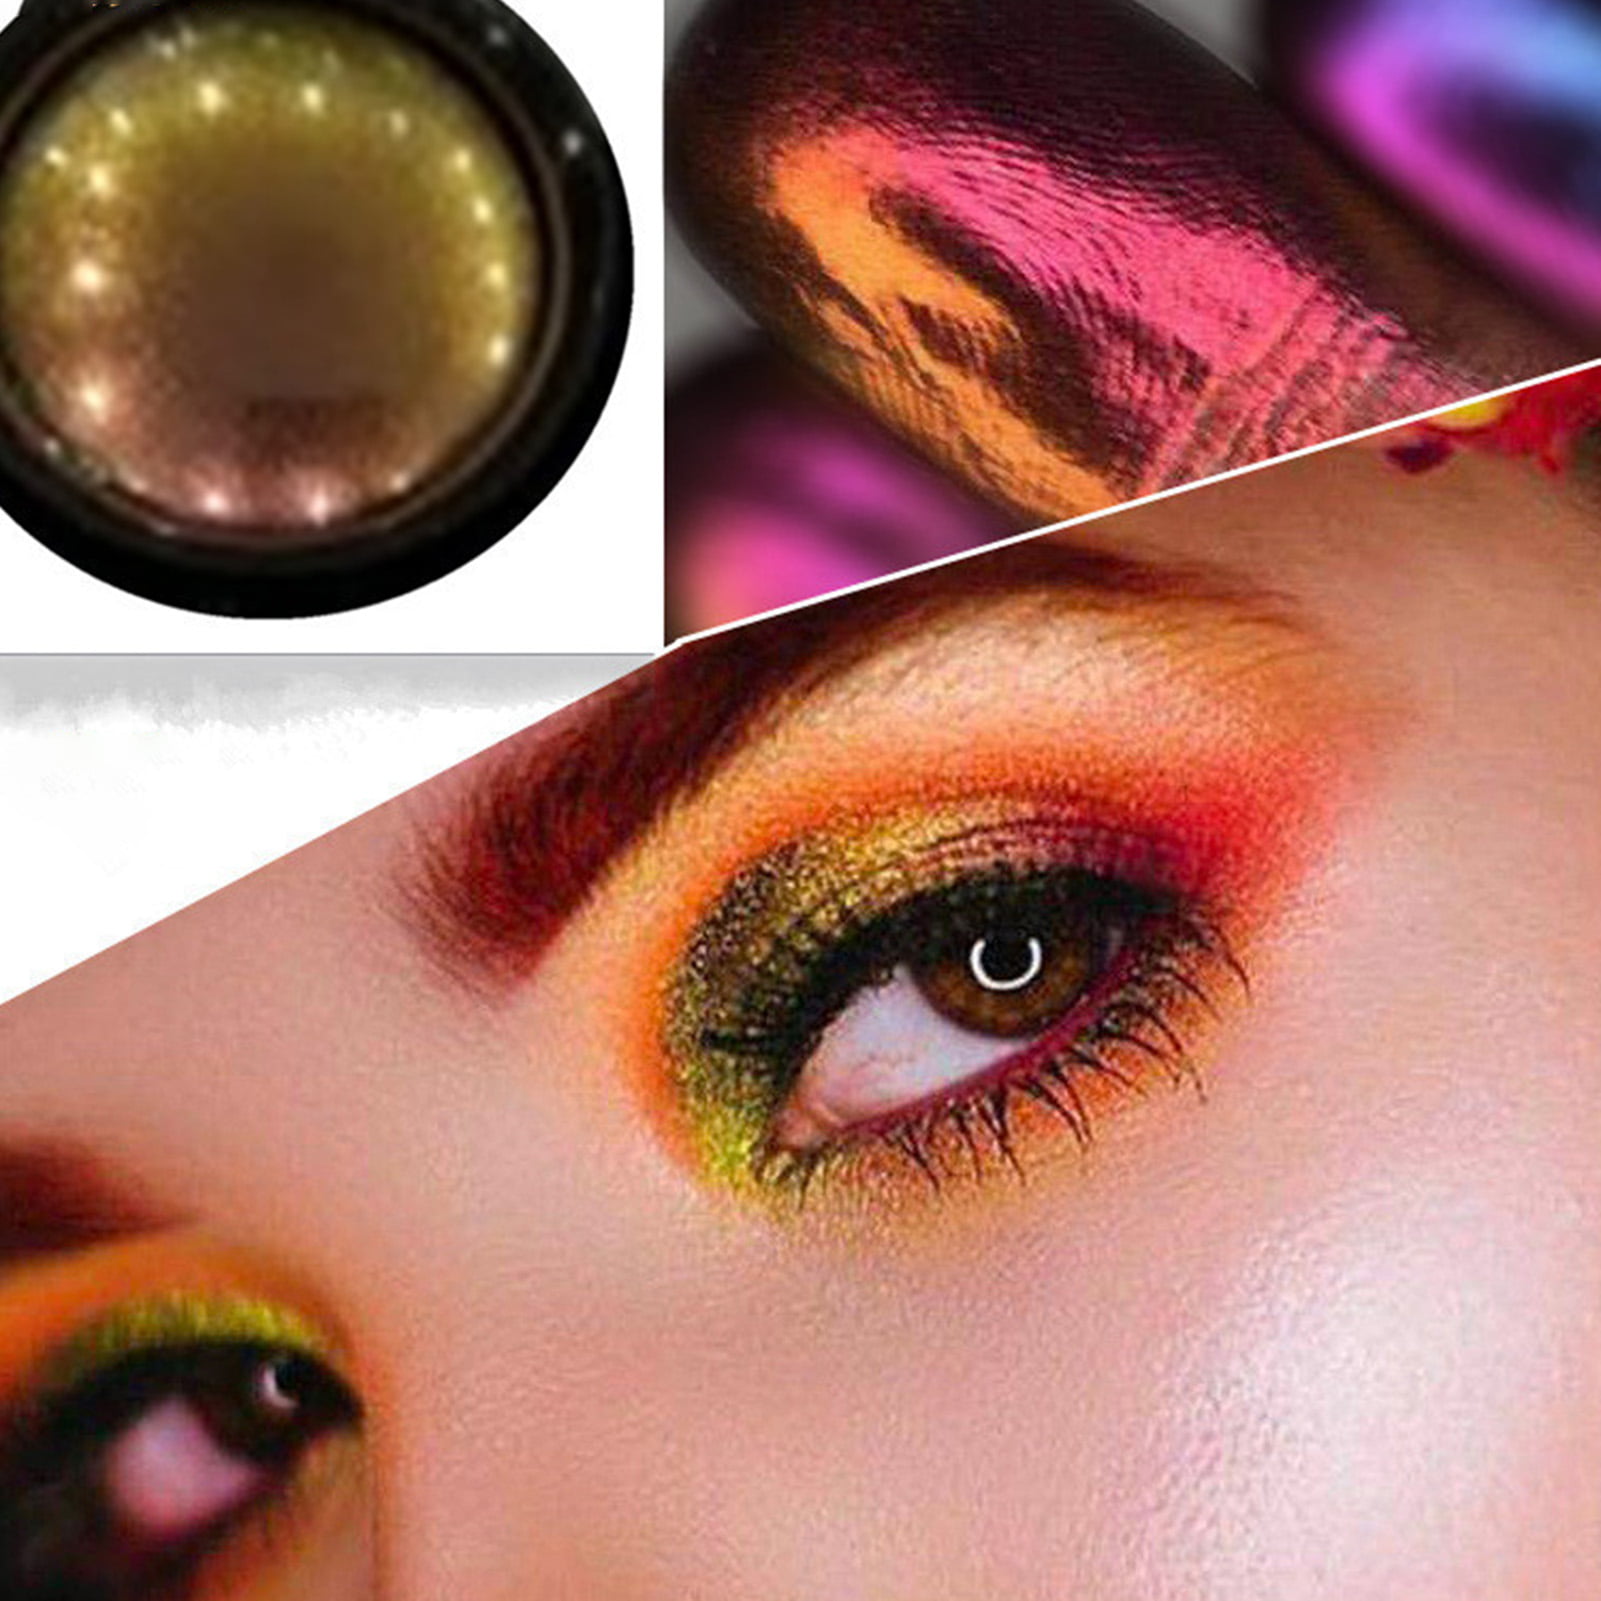 Decor Store Glitter Eyeshadow Punk Longwear Cosmetics Eye Makeup Eyeshadow  Powder for Gathering 